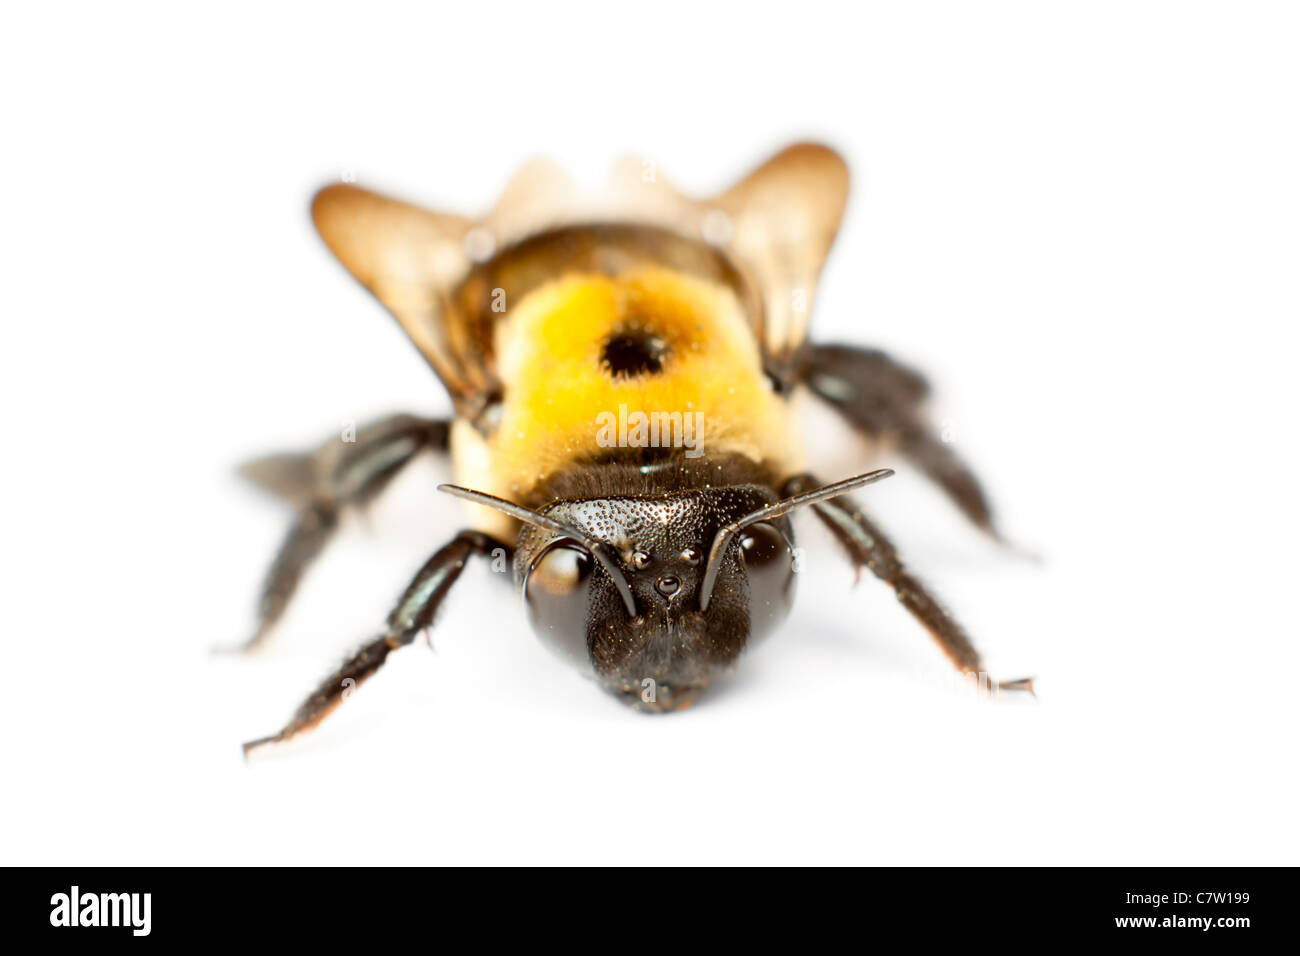 Primo piano di un'ape al miele con ali trasparenti sparate dalla